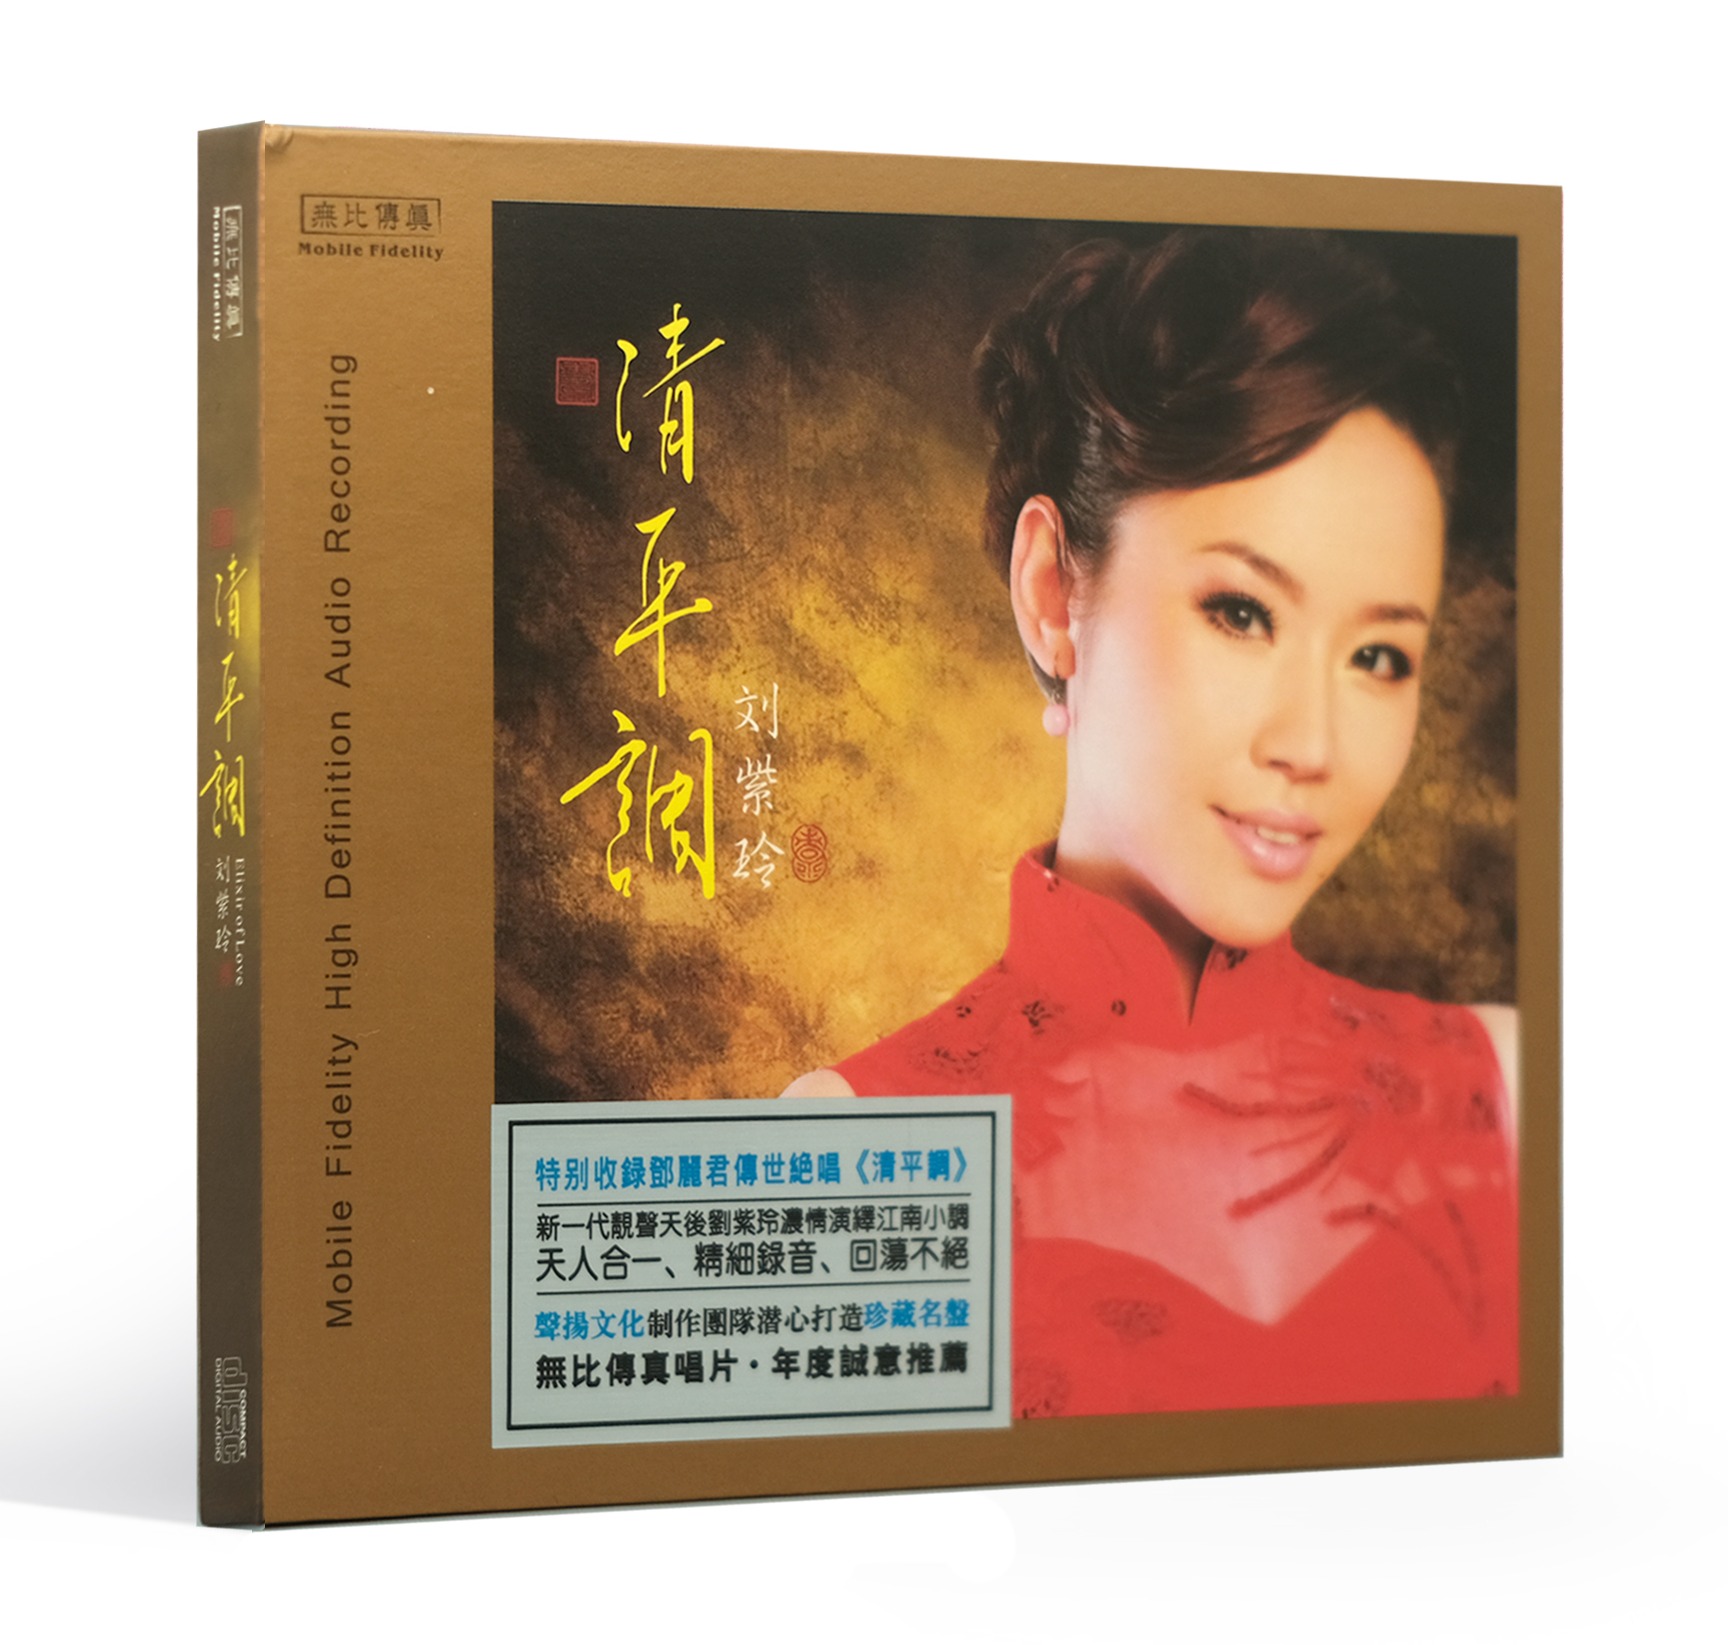 无比传真 刘紫玲 清平调 试机人声  初版CD 经典发烧金曲唱片